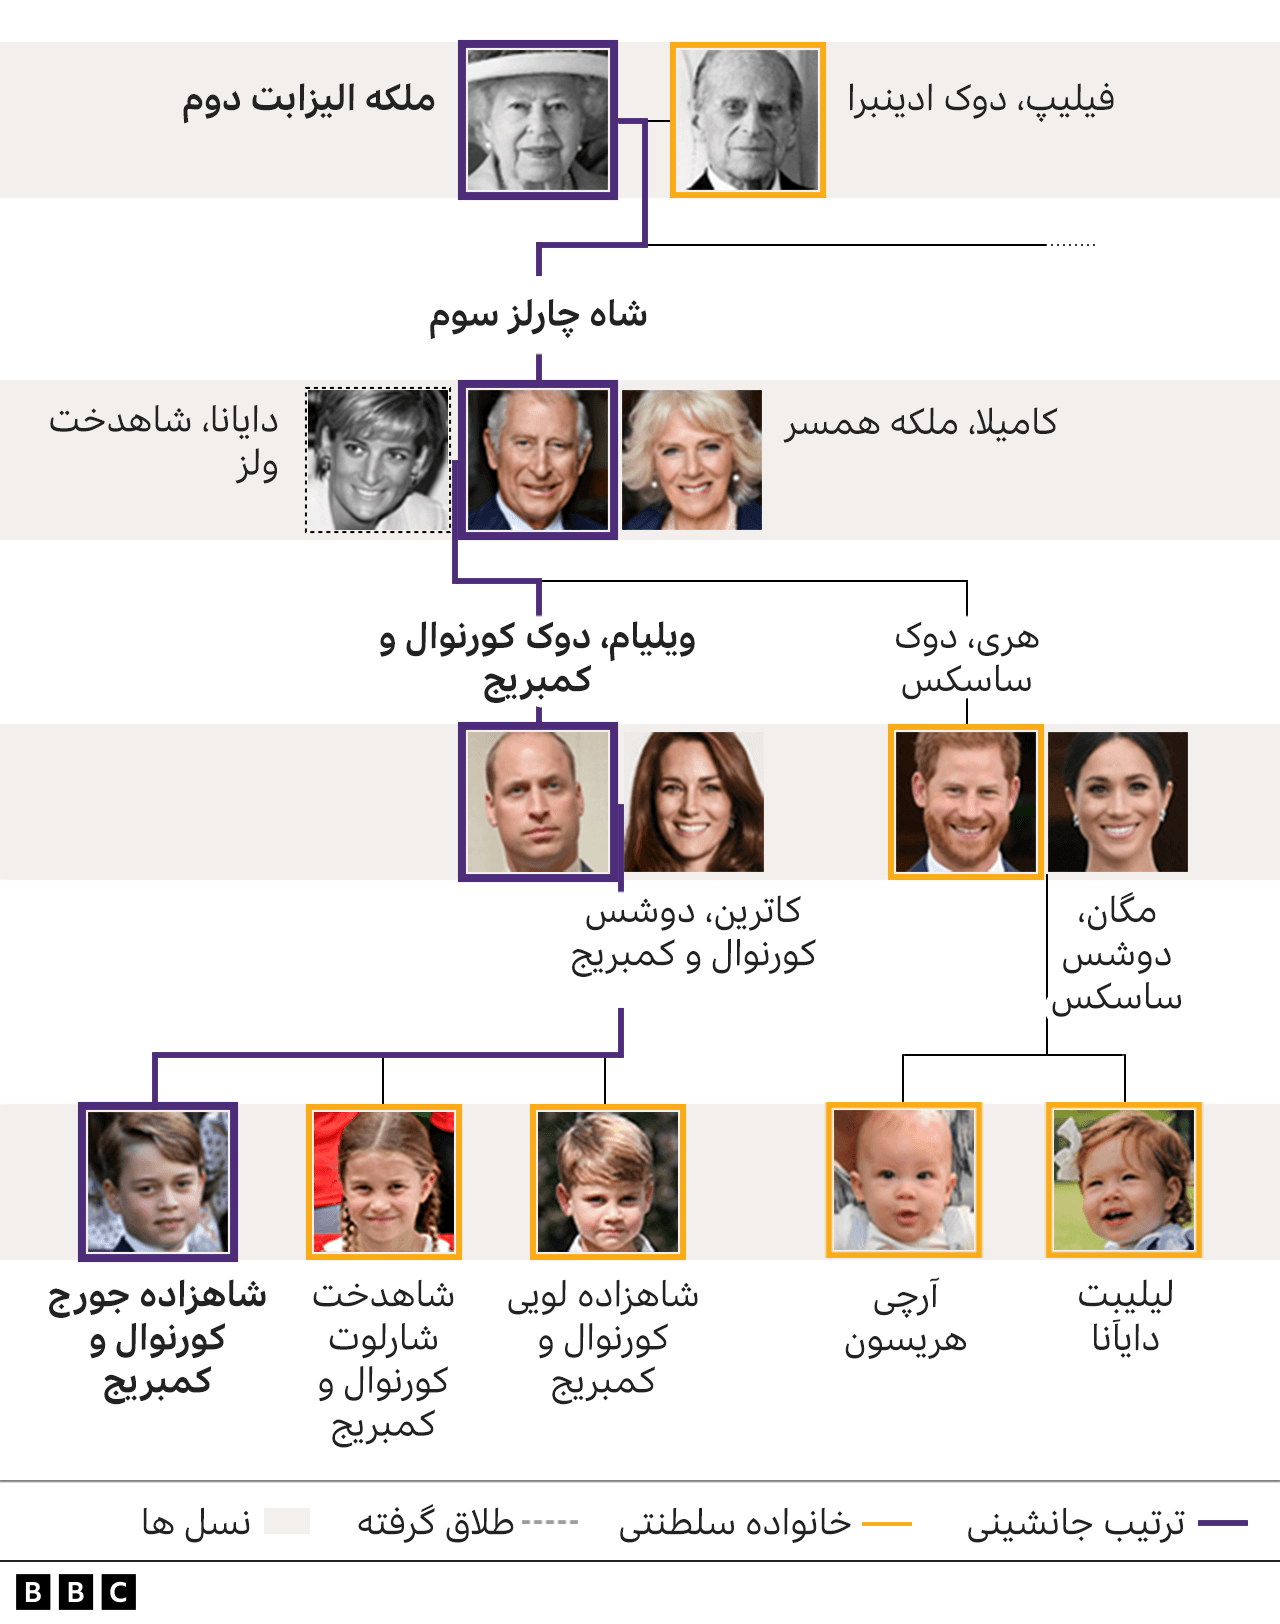 خانواده سلطنتی